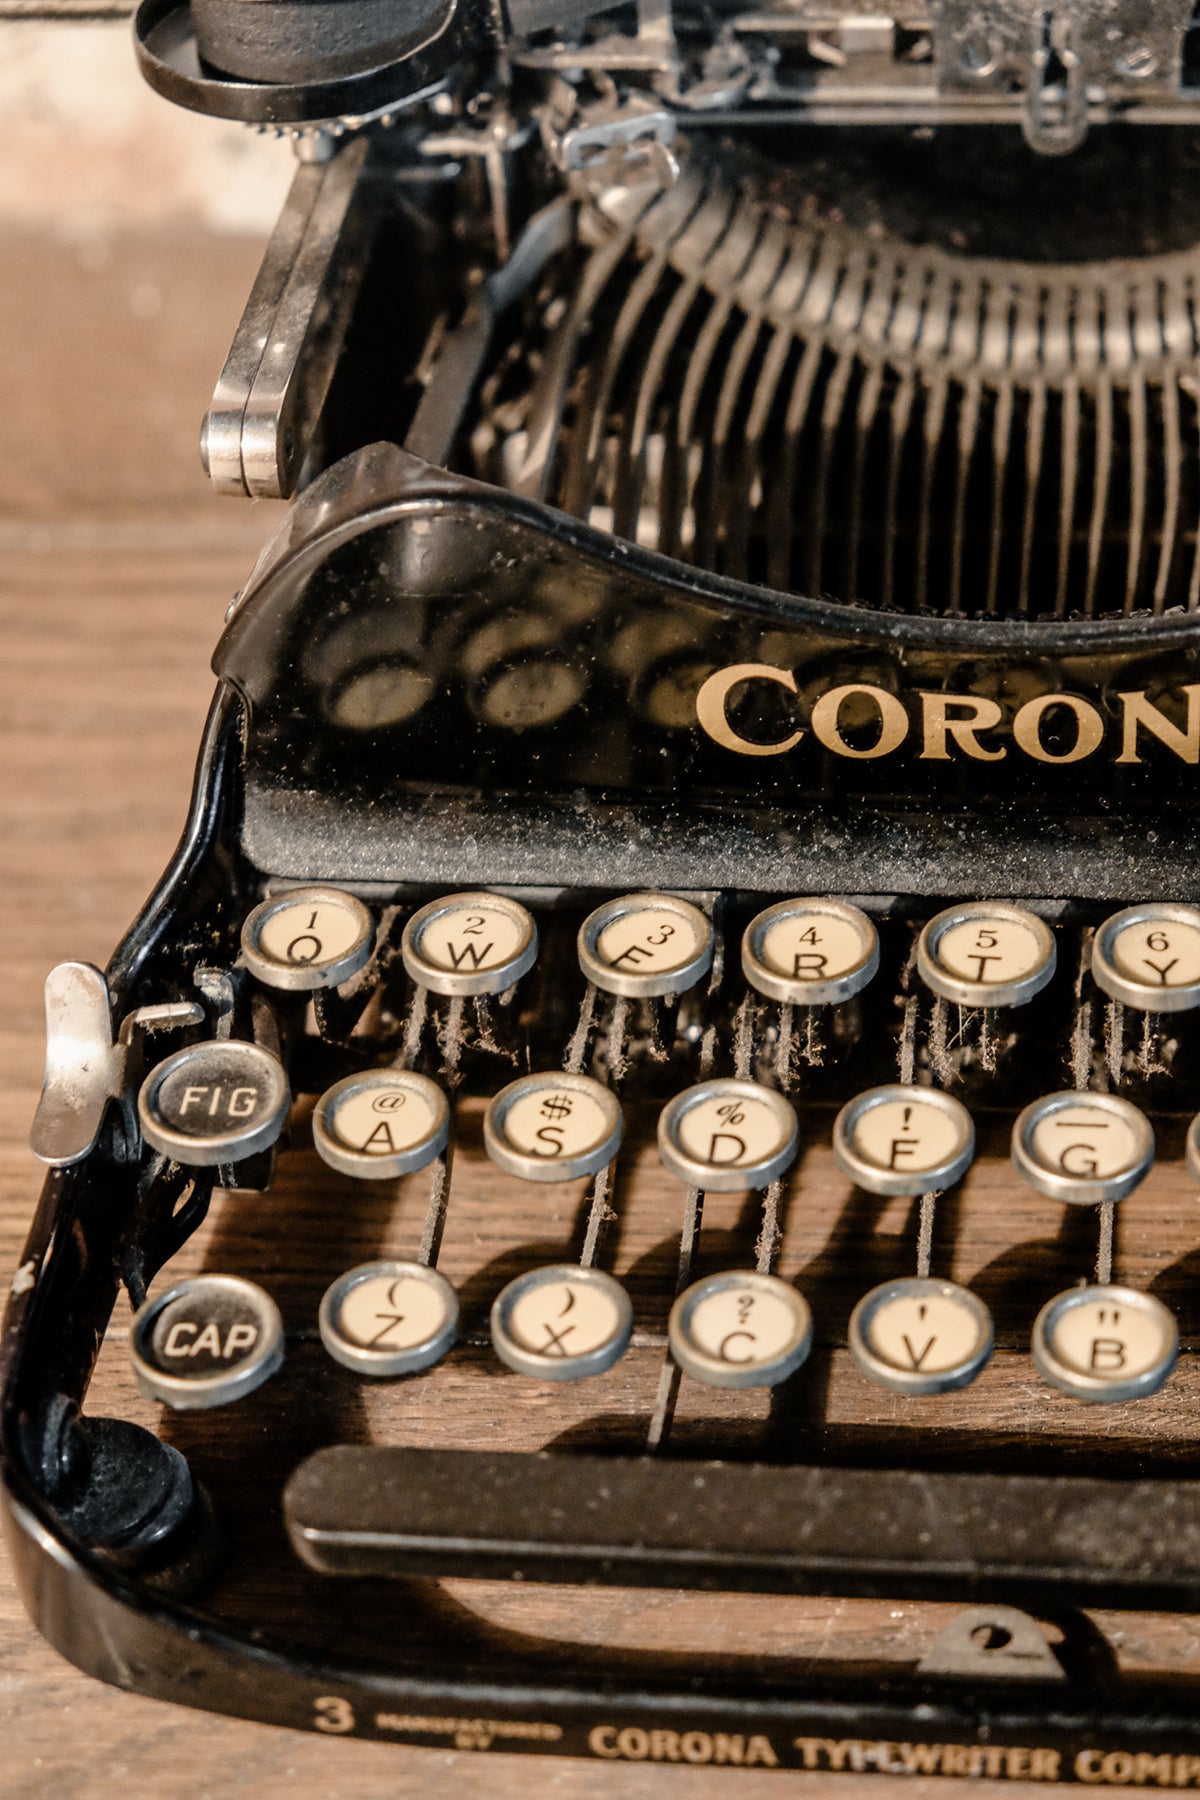 Corona 3 Typewriter. Year 1917